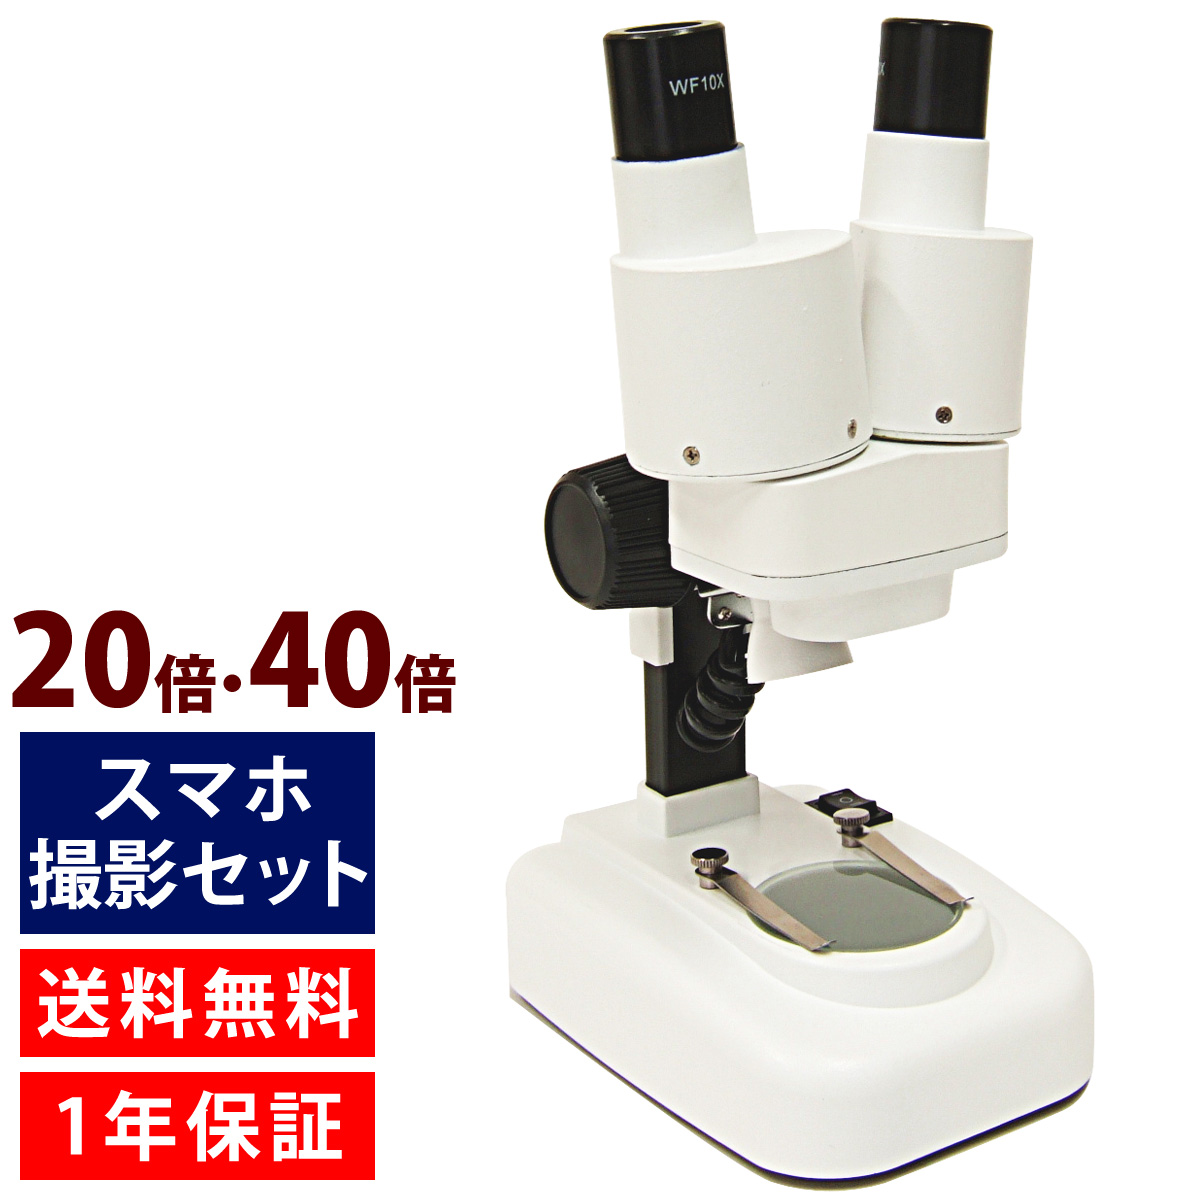 顕微鏡 双眼 スマホ撮影セット 小学生 倍 40倍 2way 実体顕微鏡 顕微鏡セット 子供 学習 自由研究 ルーペスタジオ